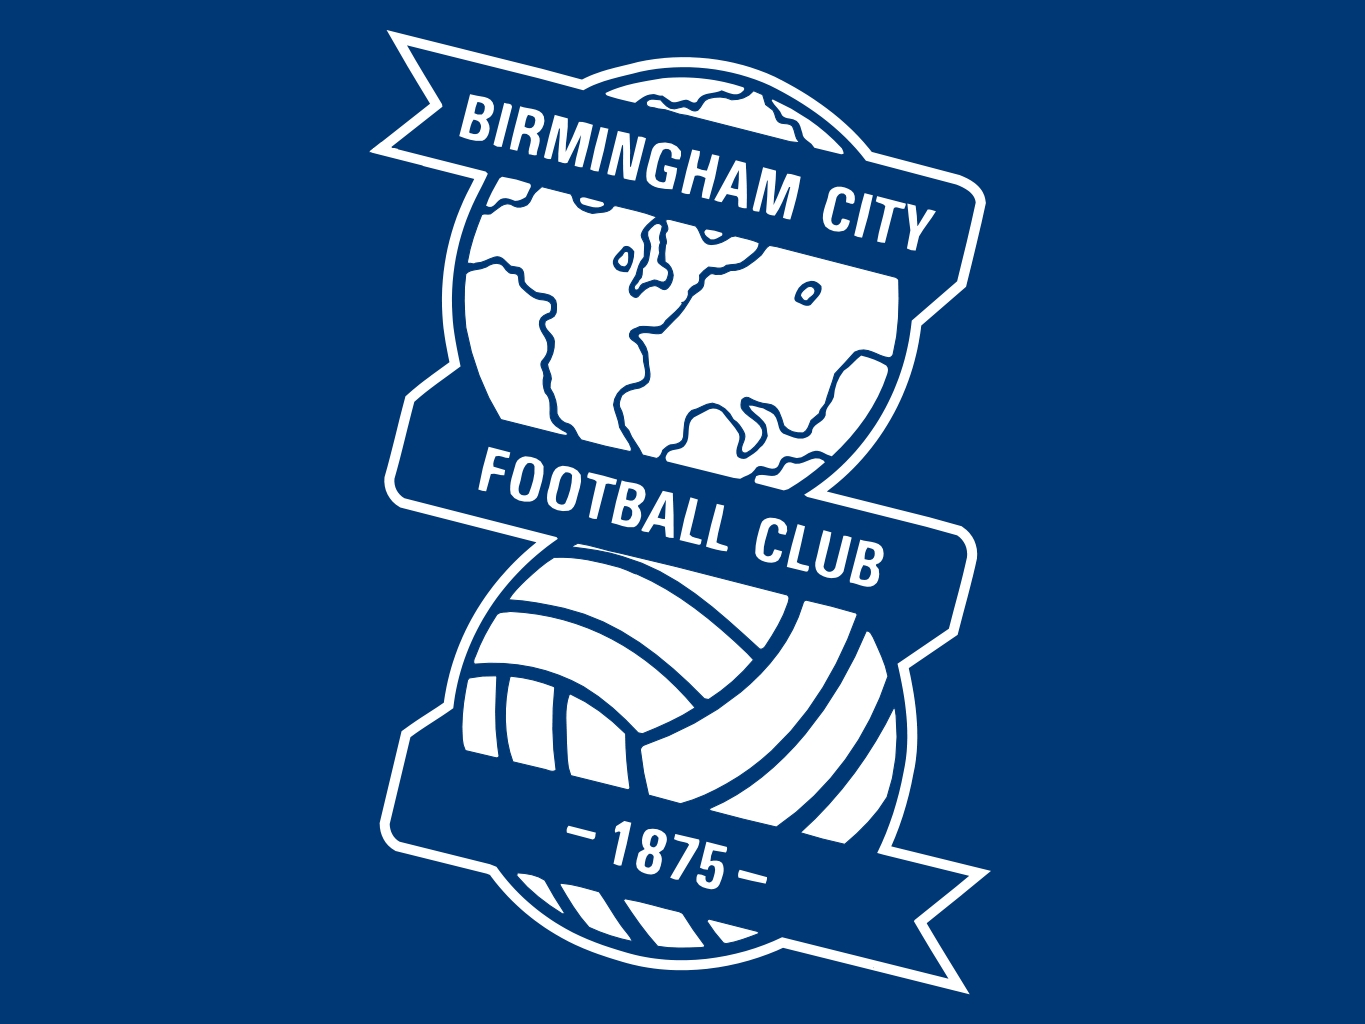 Barclays premier league logo team